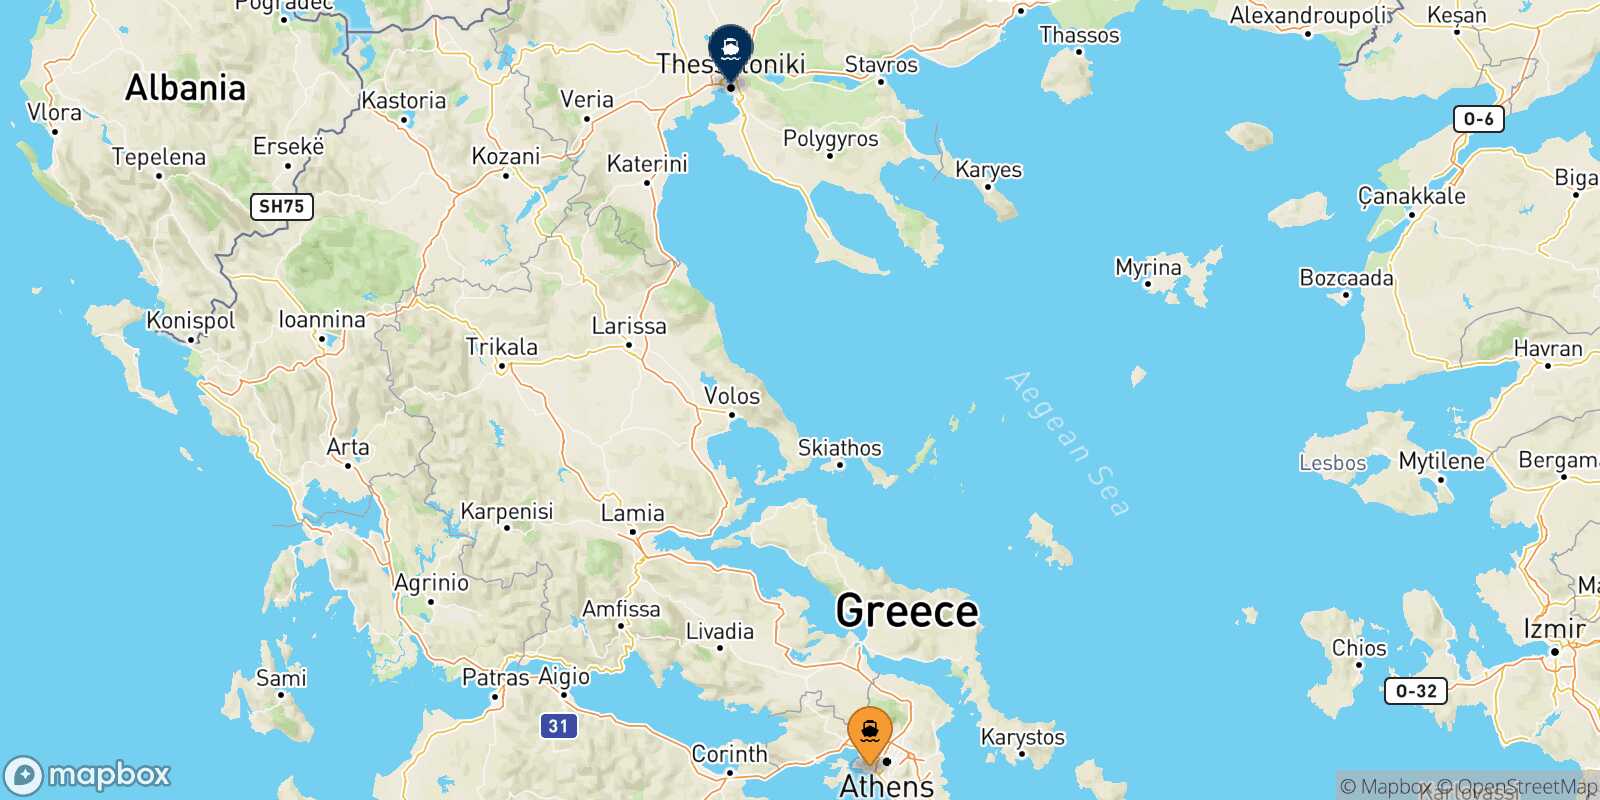 Piraeus Thessaloniki route map